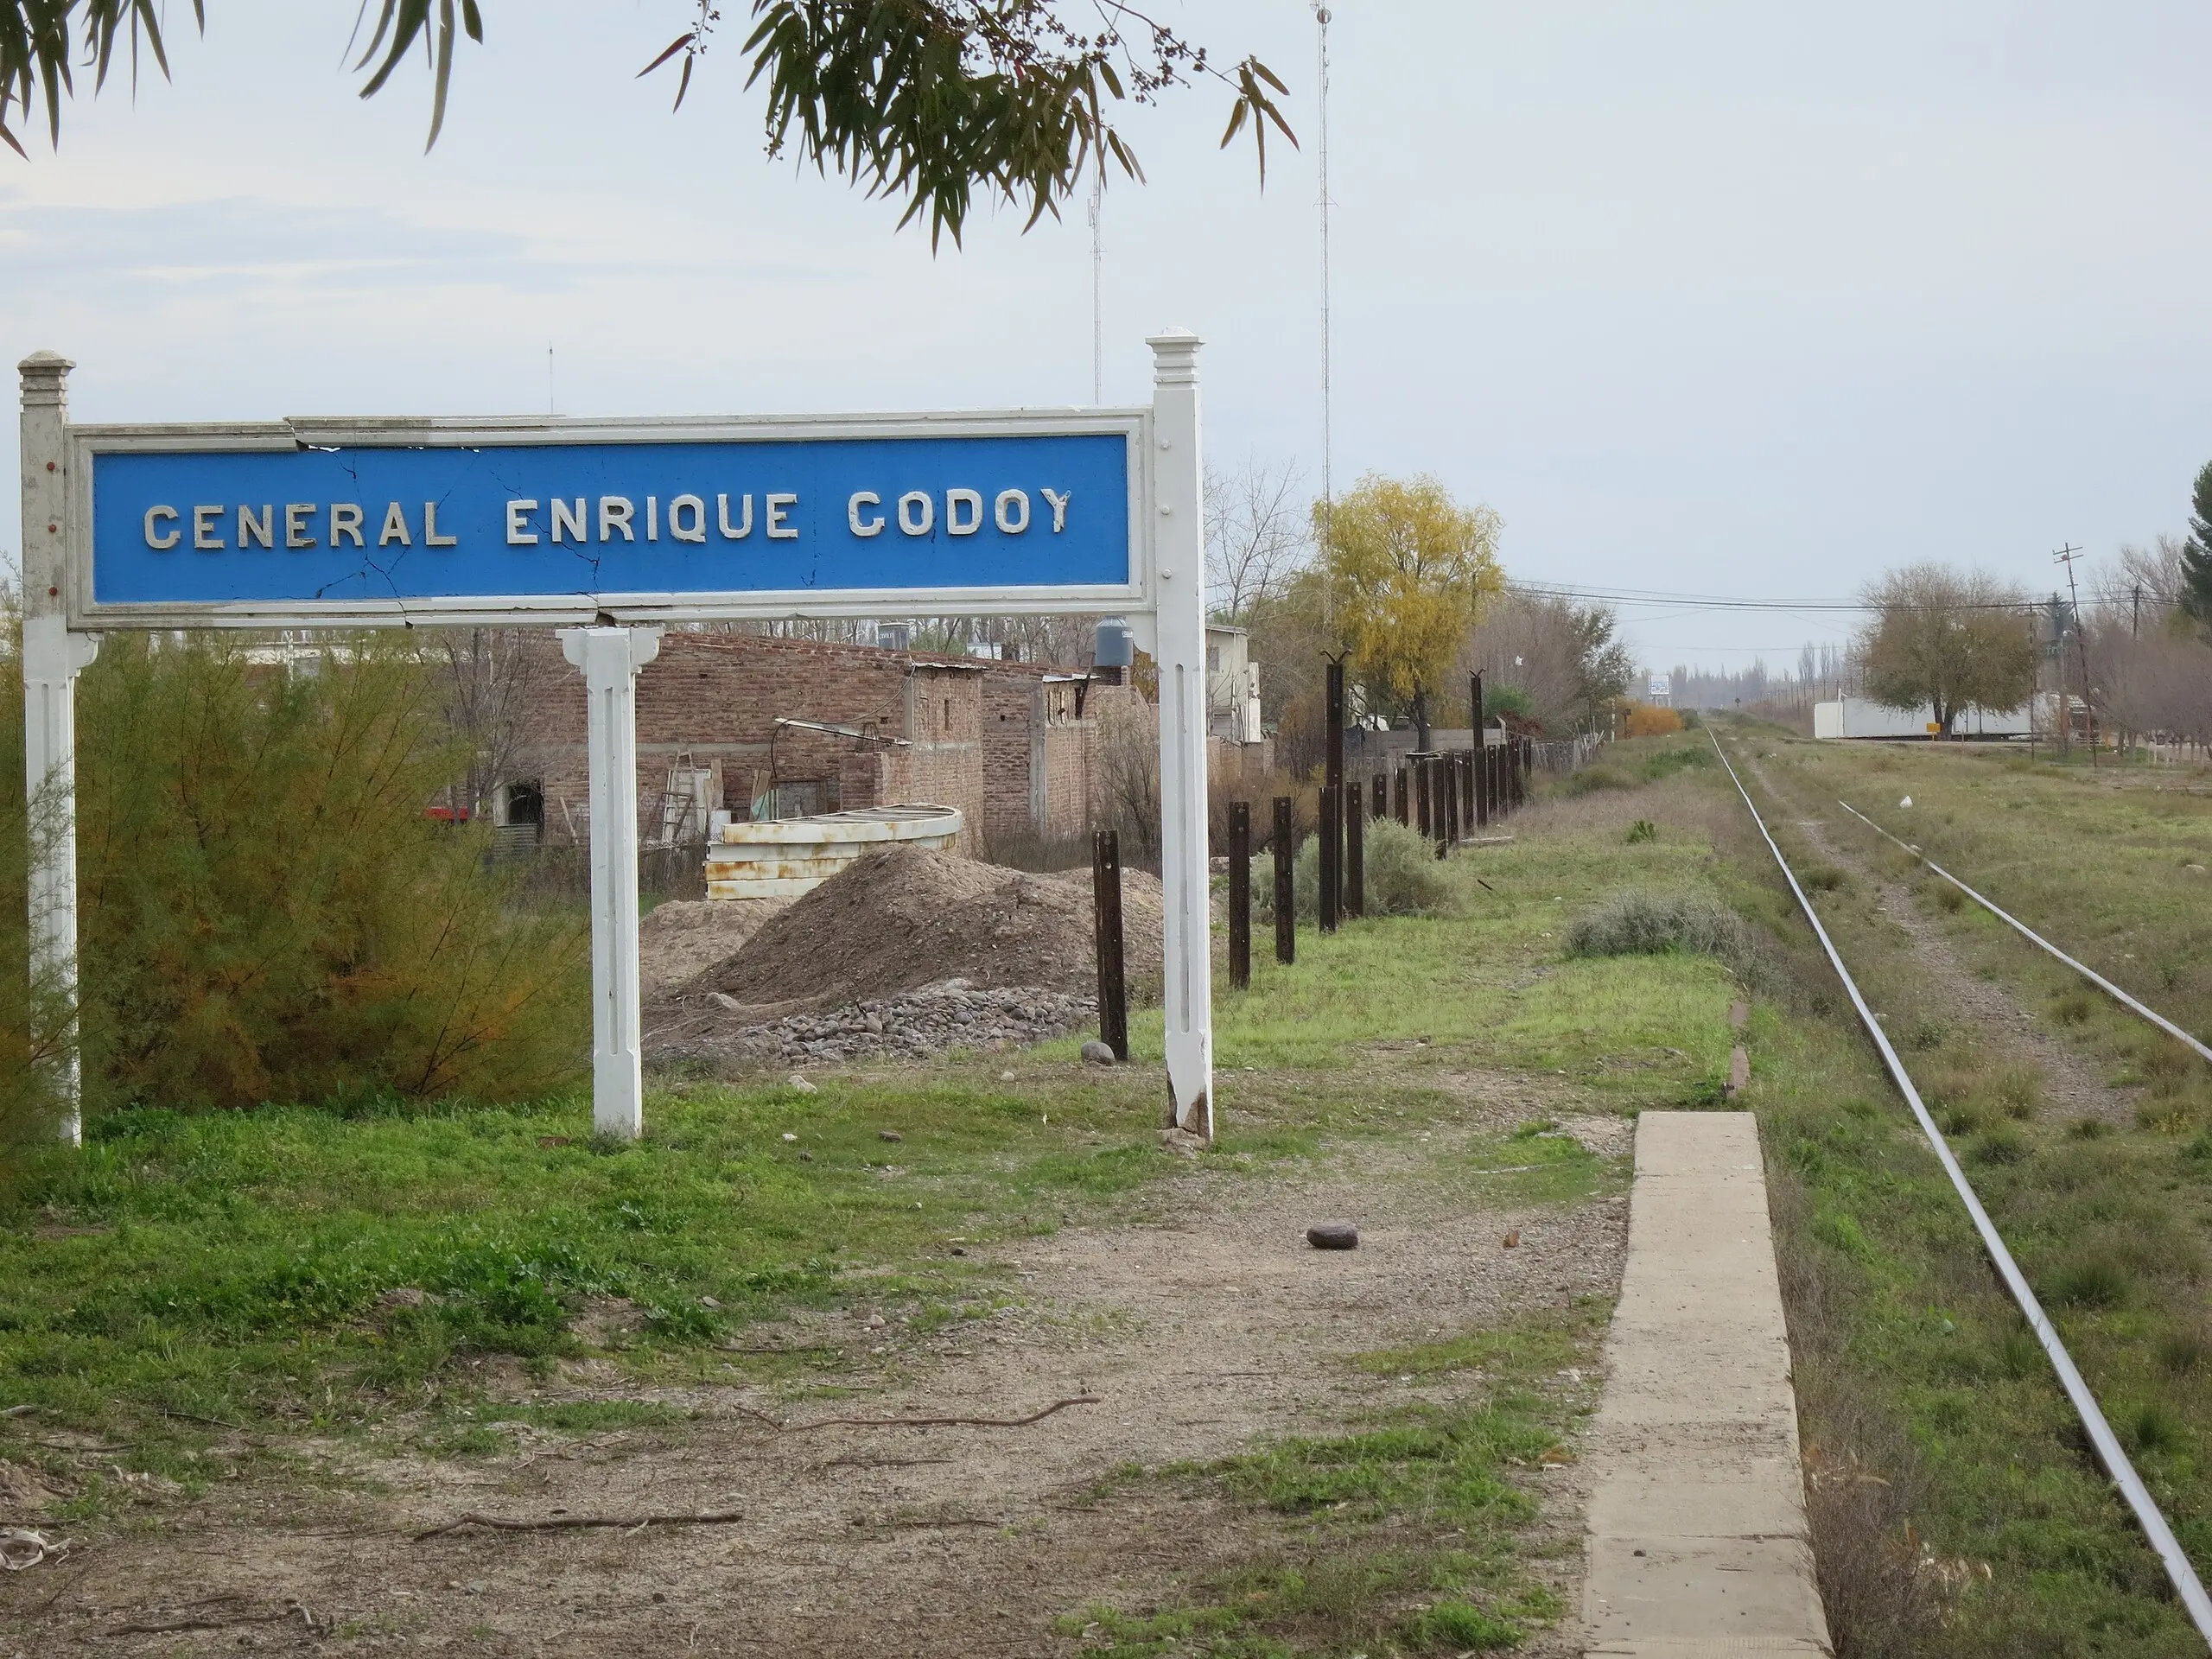 estacion de ferrocarril godoy rio negro - Cuántos habitantes tiene General Enrique Godoy Río Negro